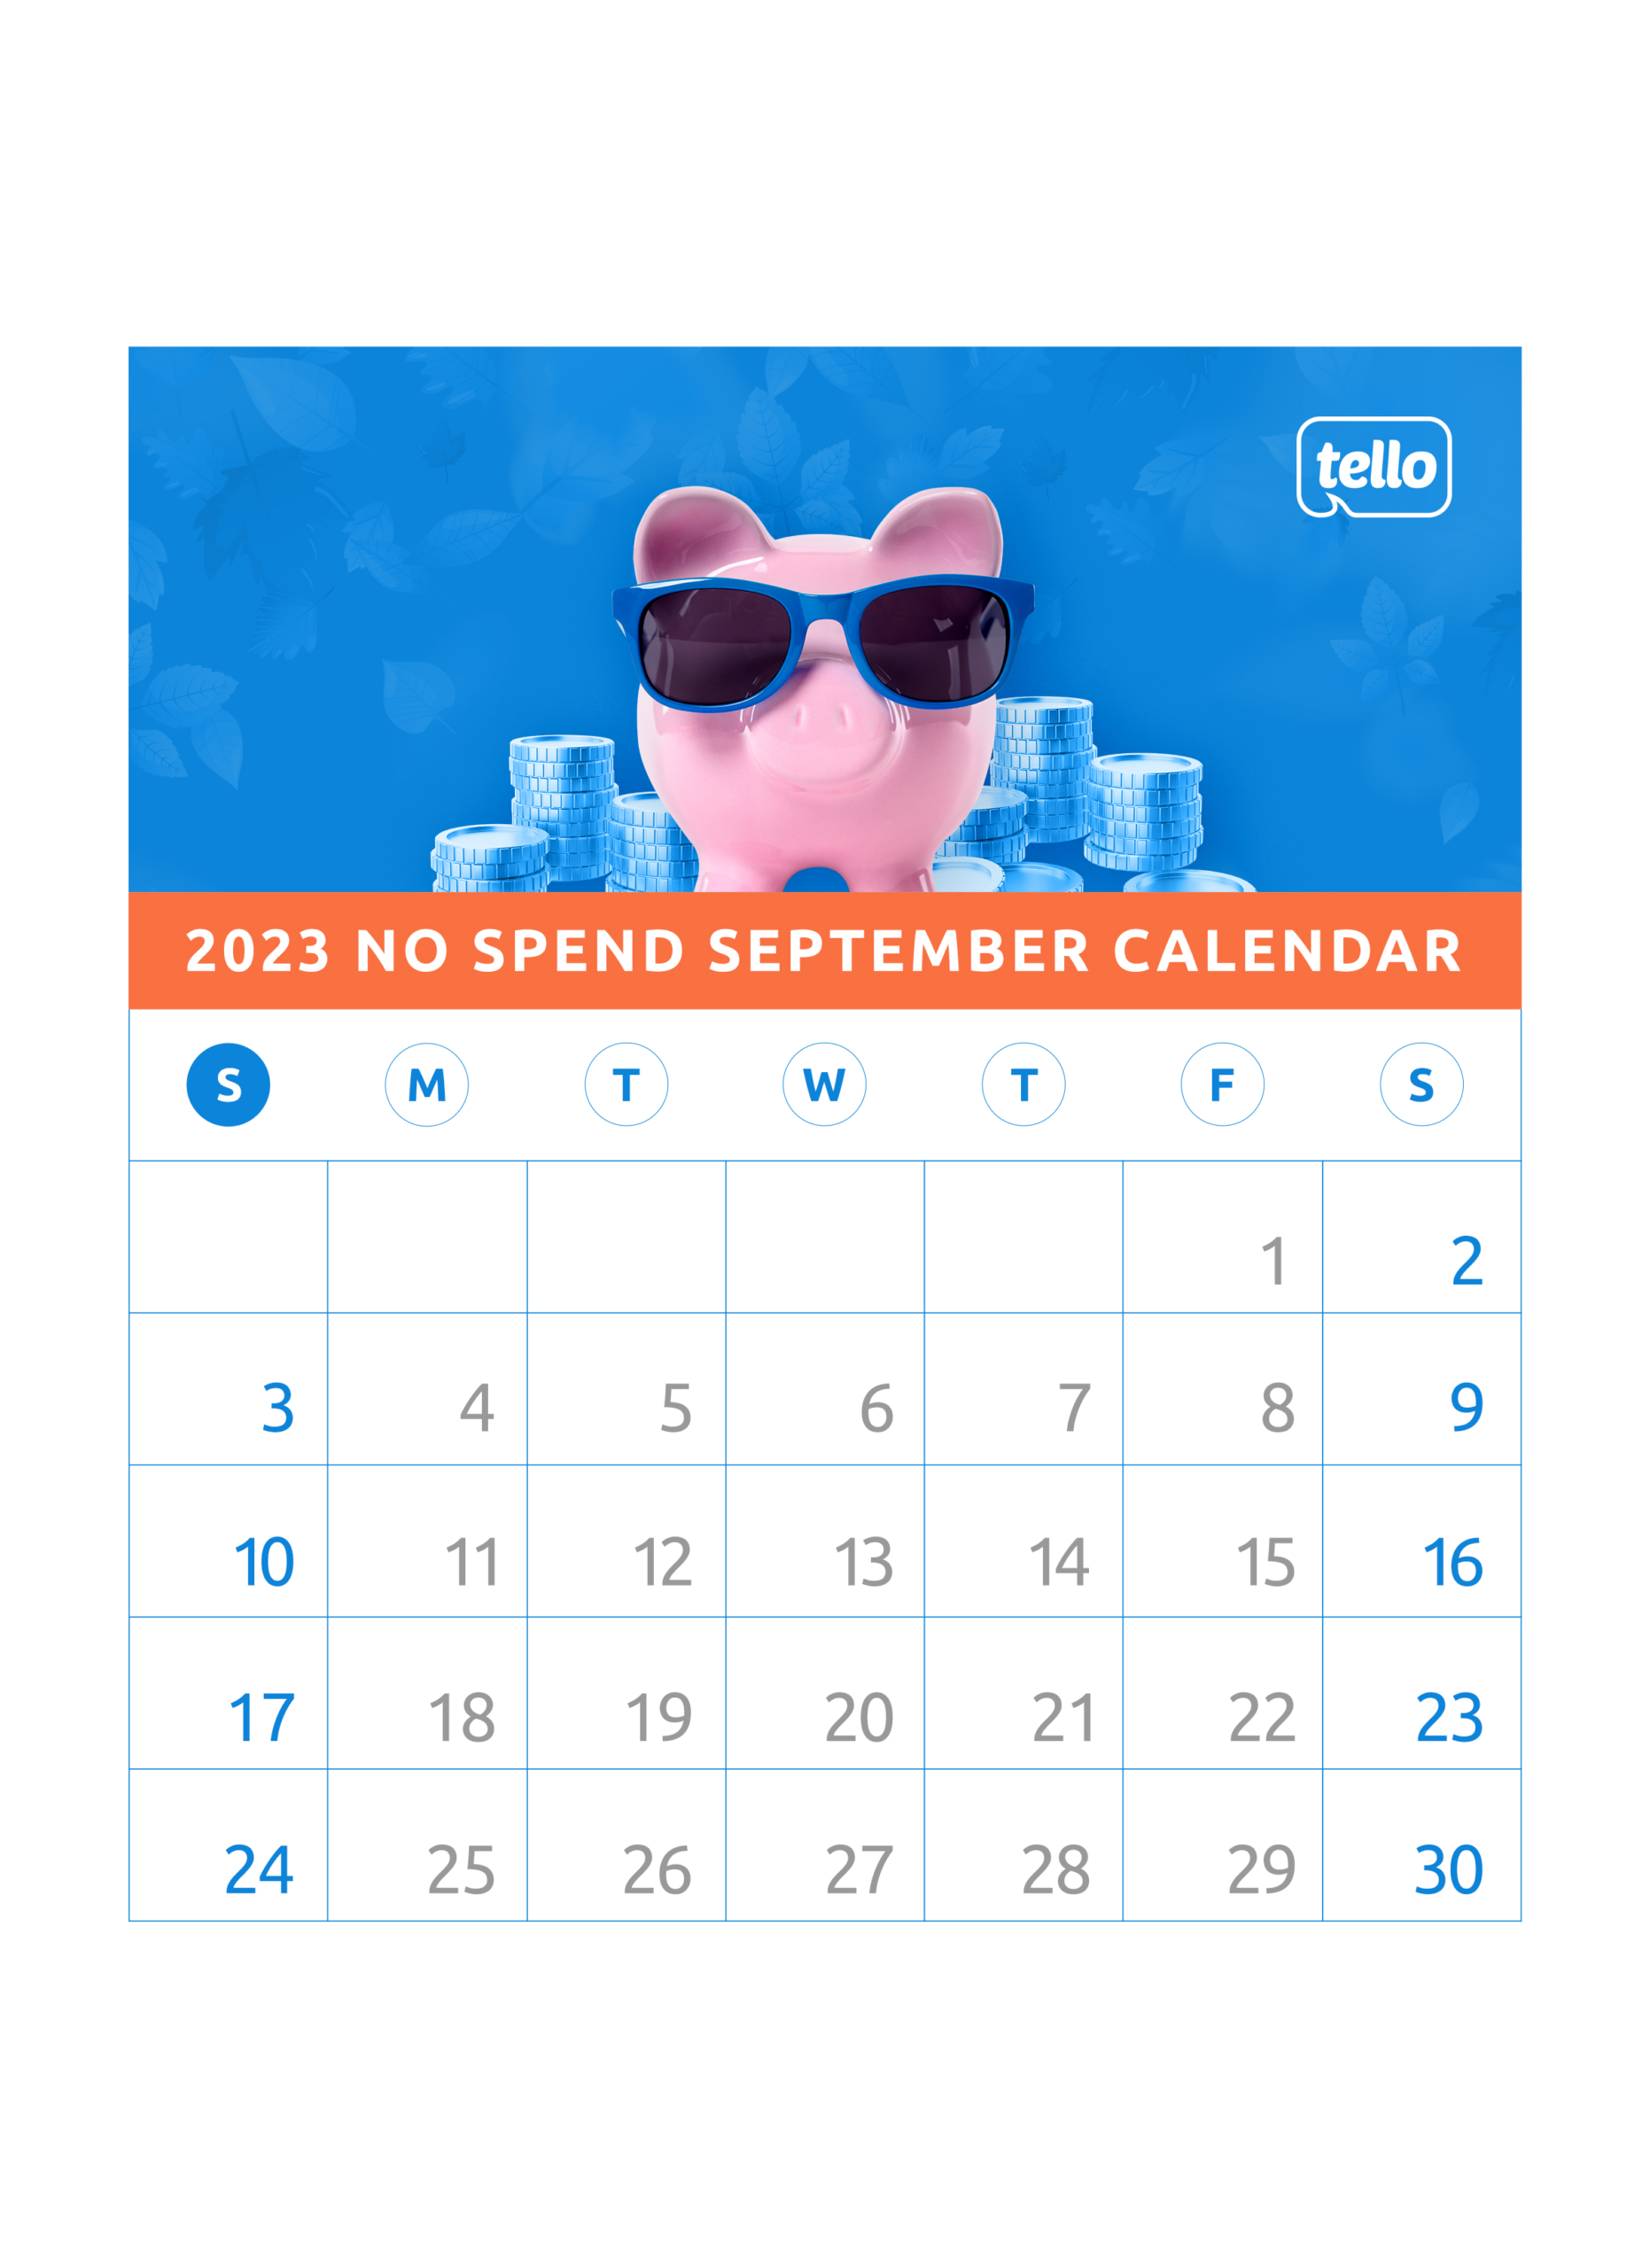 No Spend September calendar